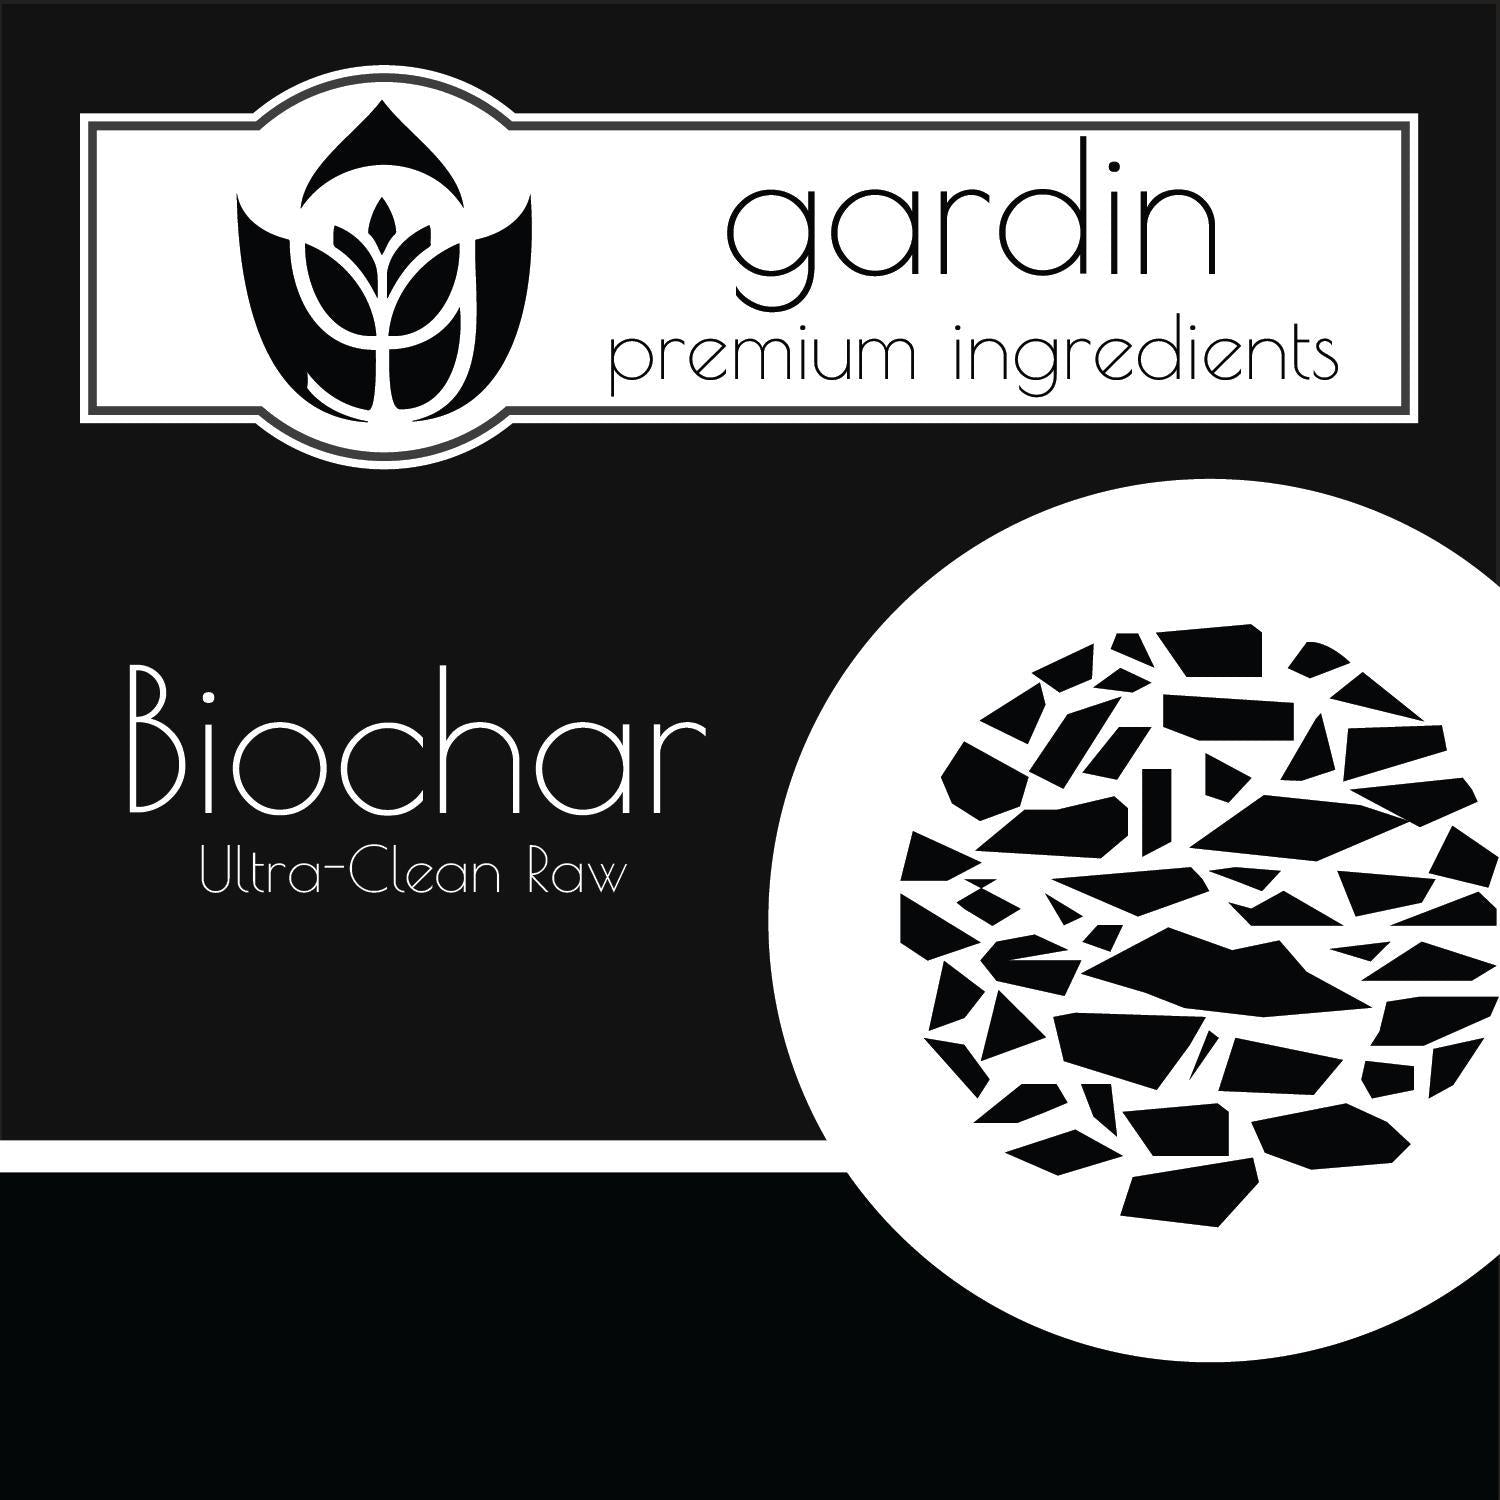 Biochar - Ultra-Clean Raw